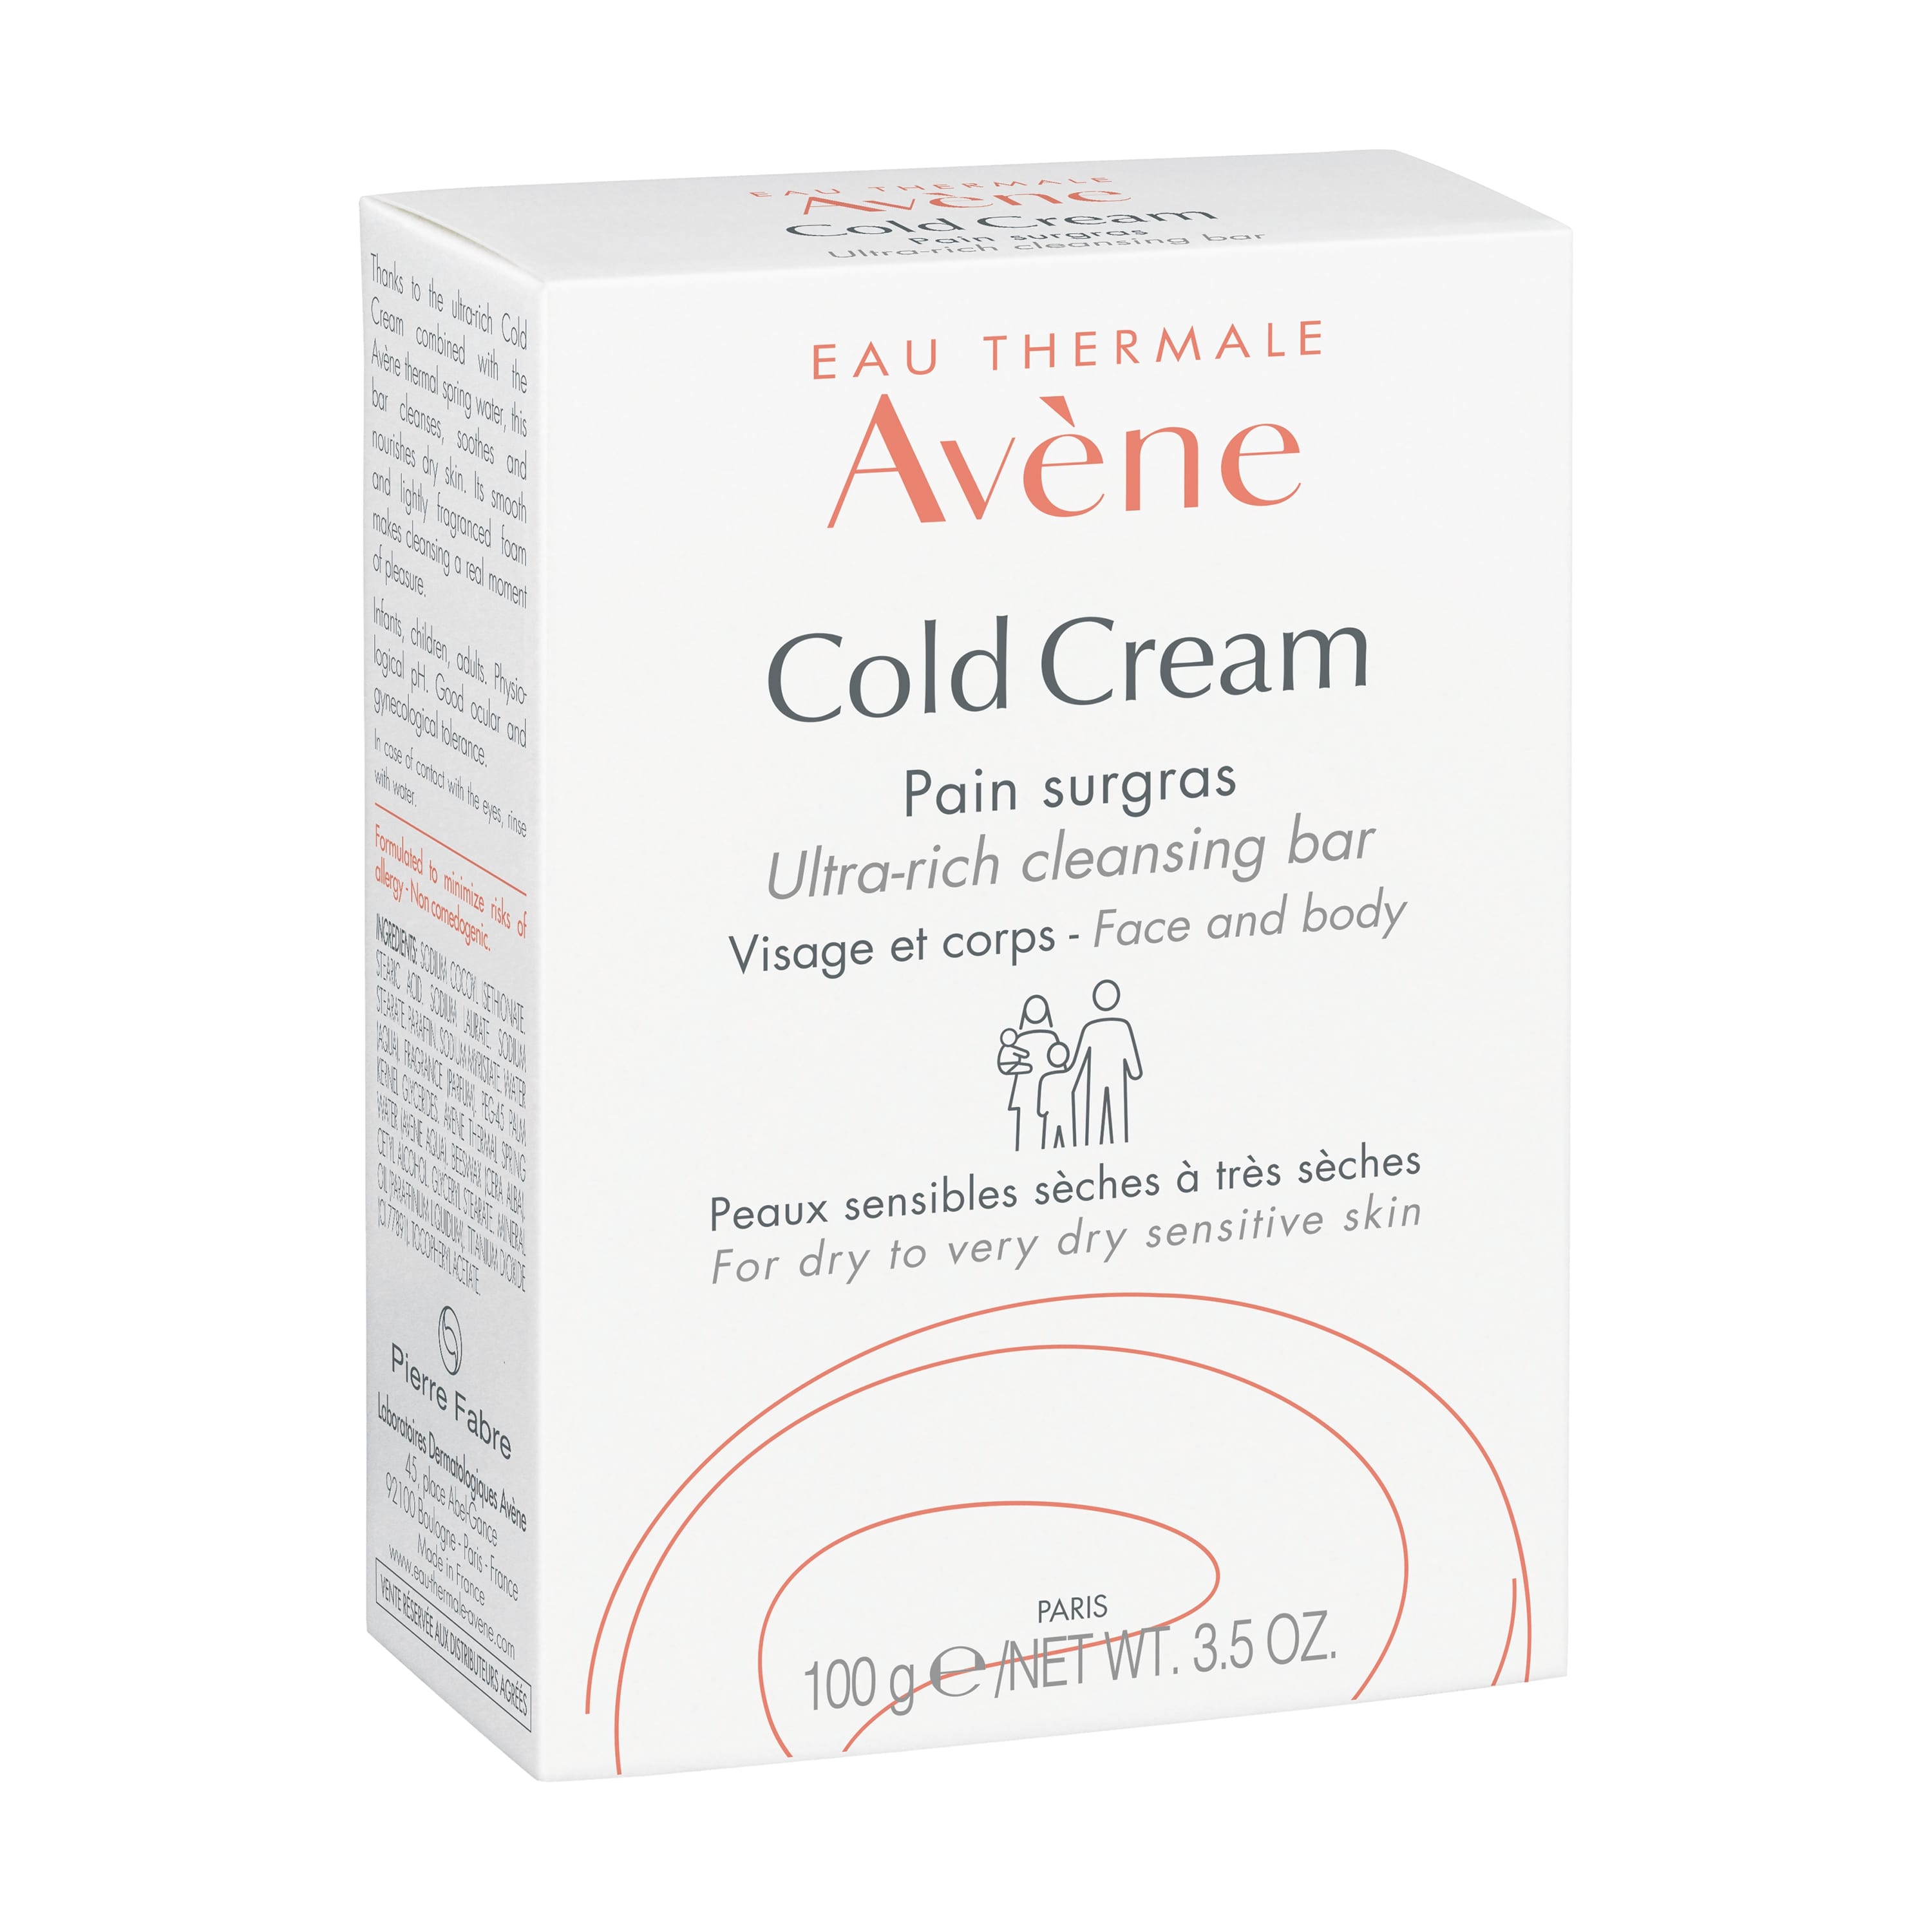 Авен Колд-крем мыло сверхпитательное 100г мыло жидкое avene сверхпитательное мыло с колд кремом cold cream ultra rich cleansing bar